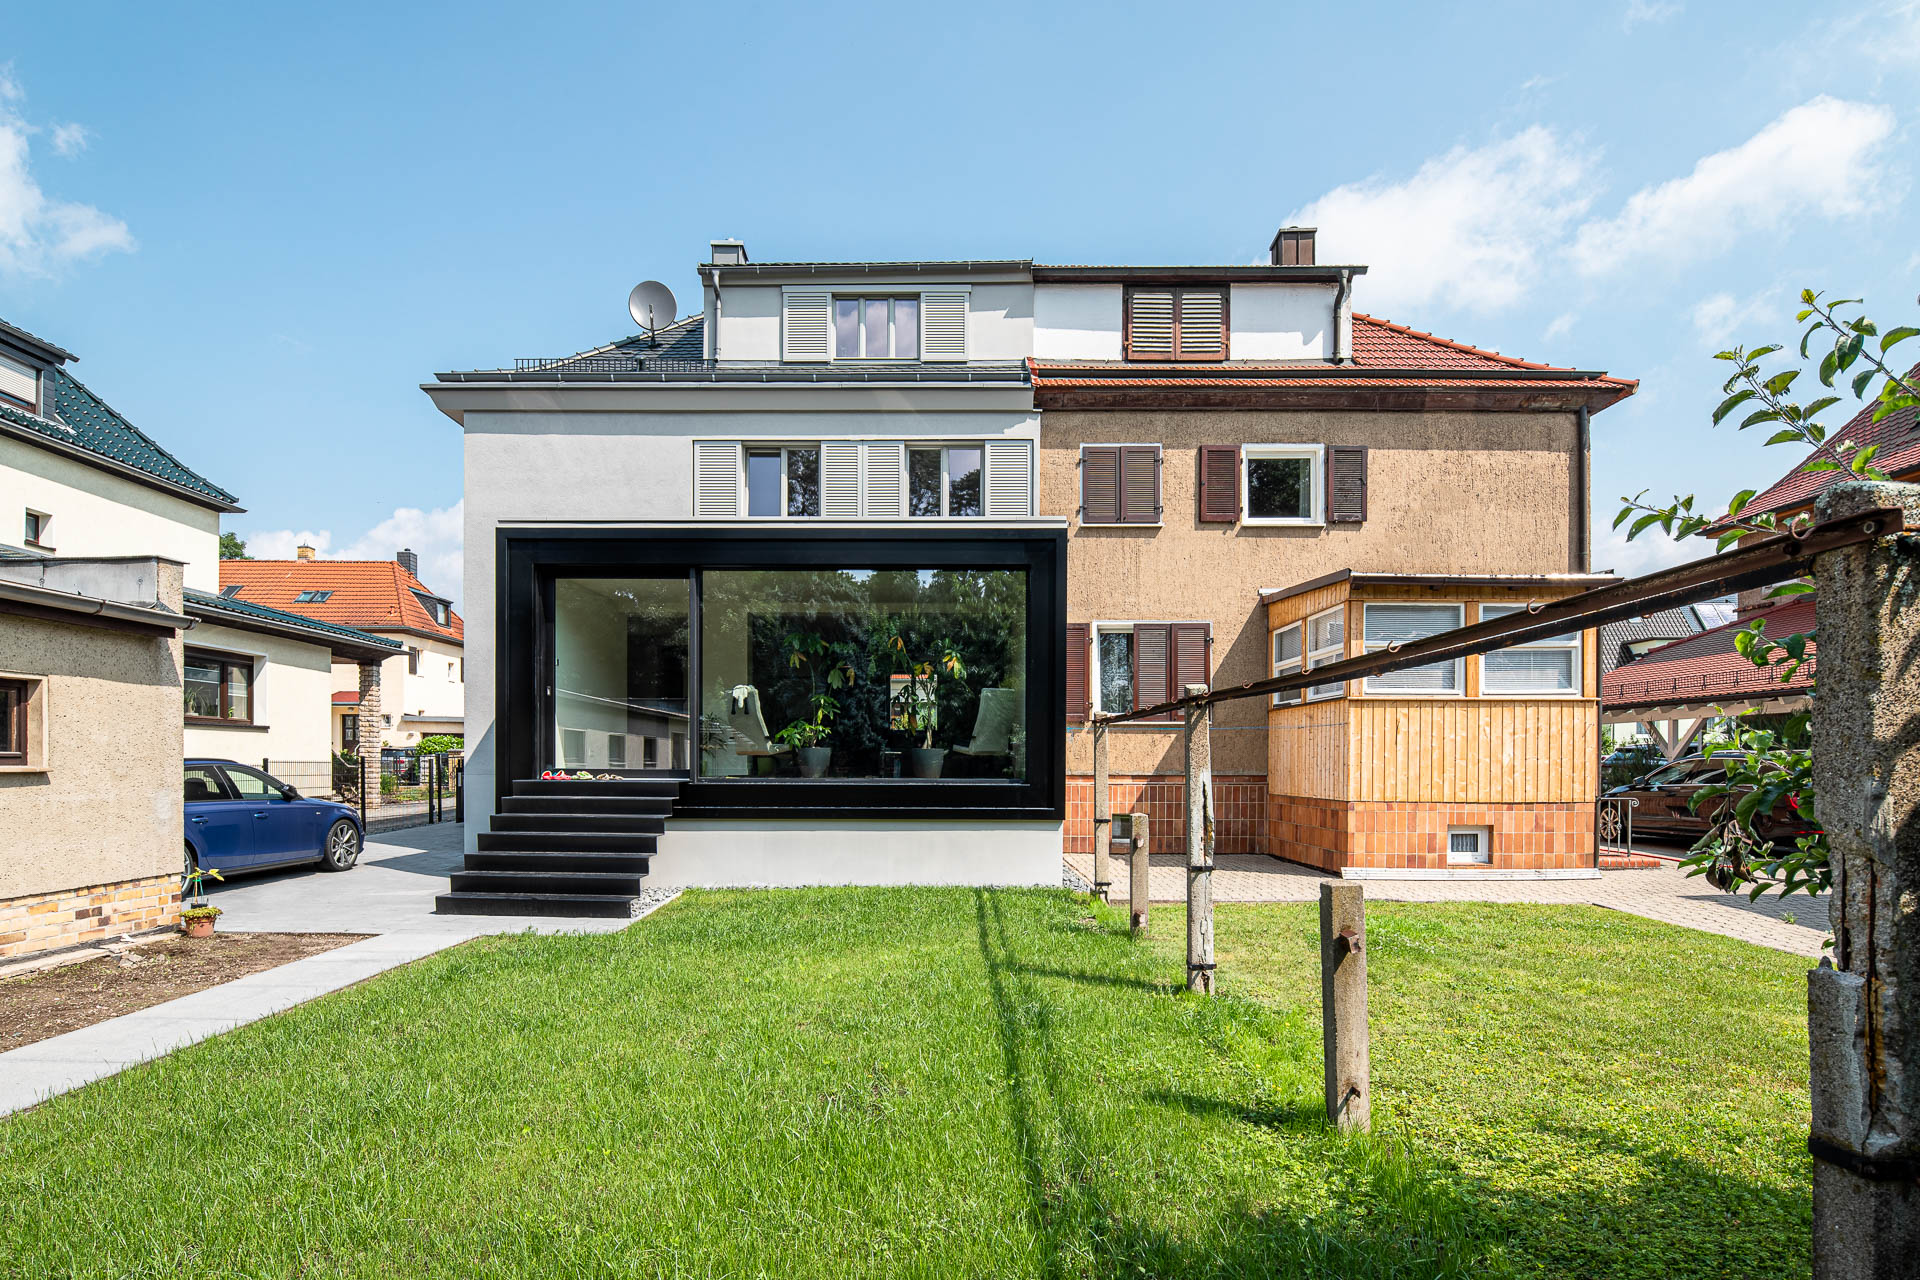 Sanierung einer Doppelhaushälfte in Leipzig